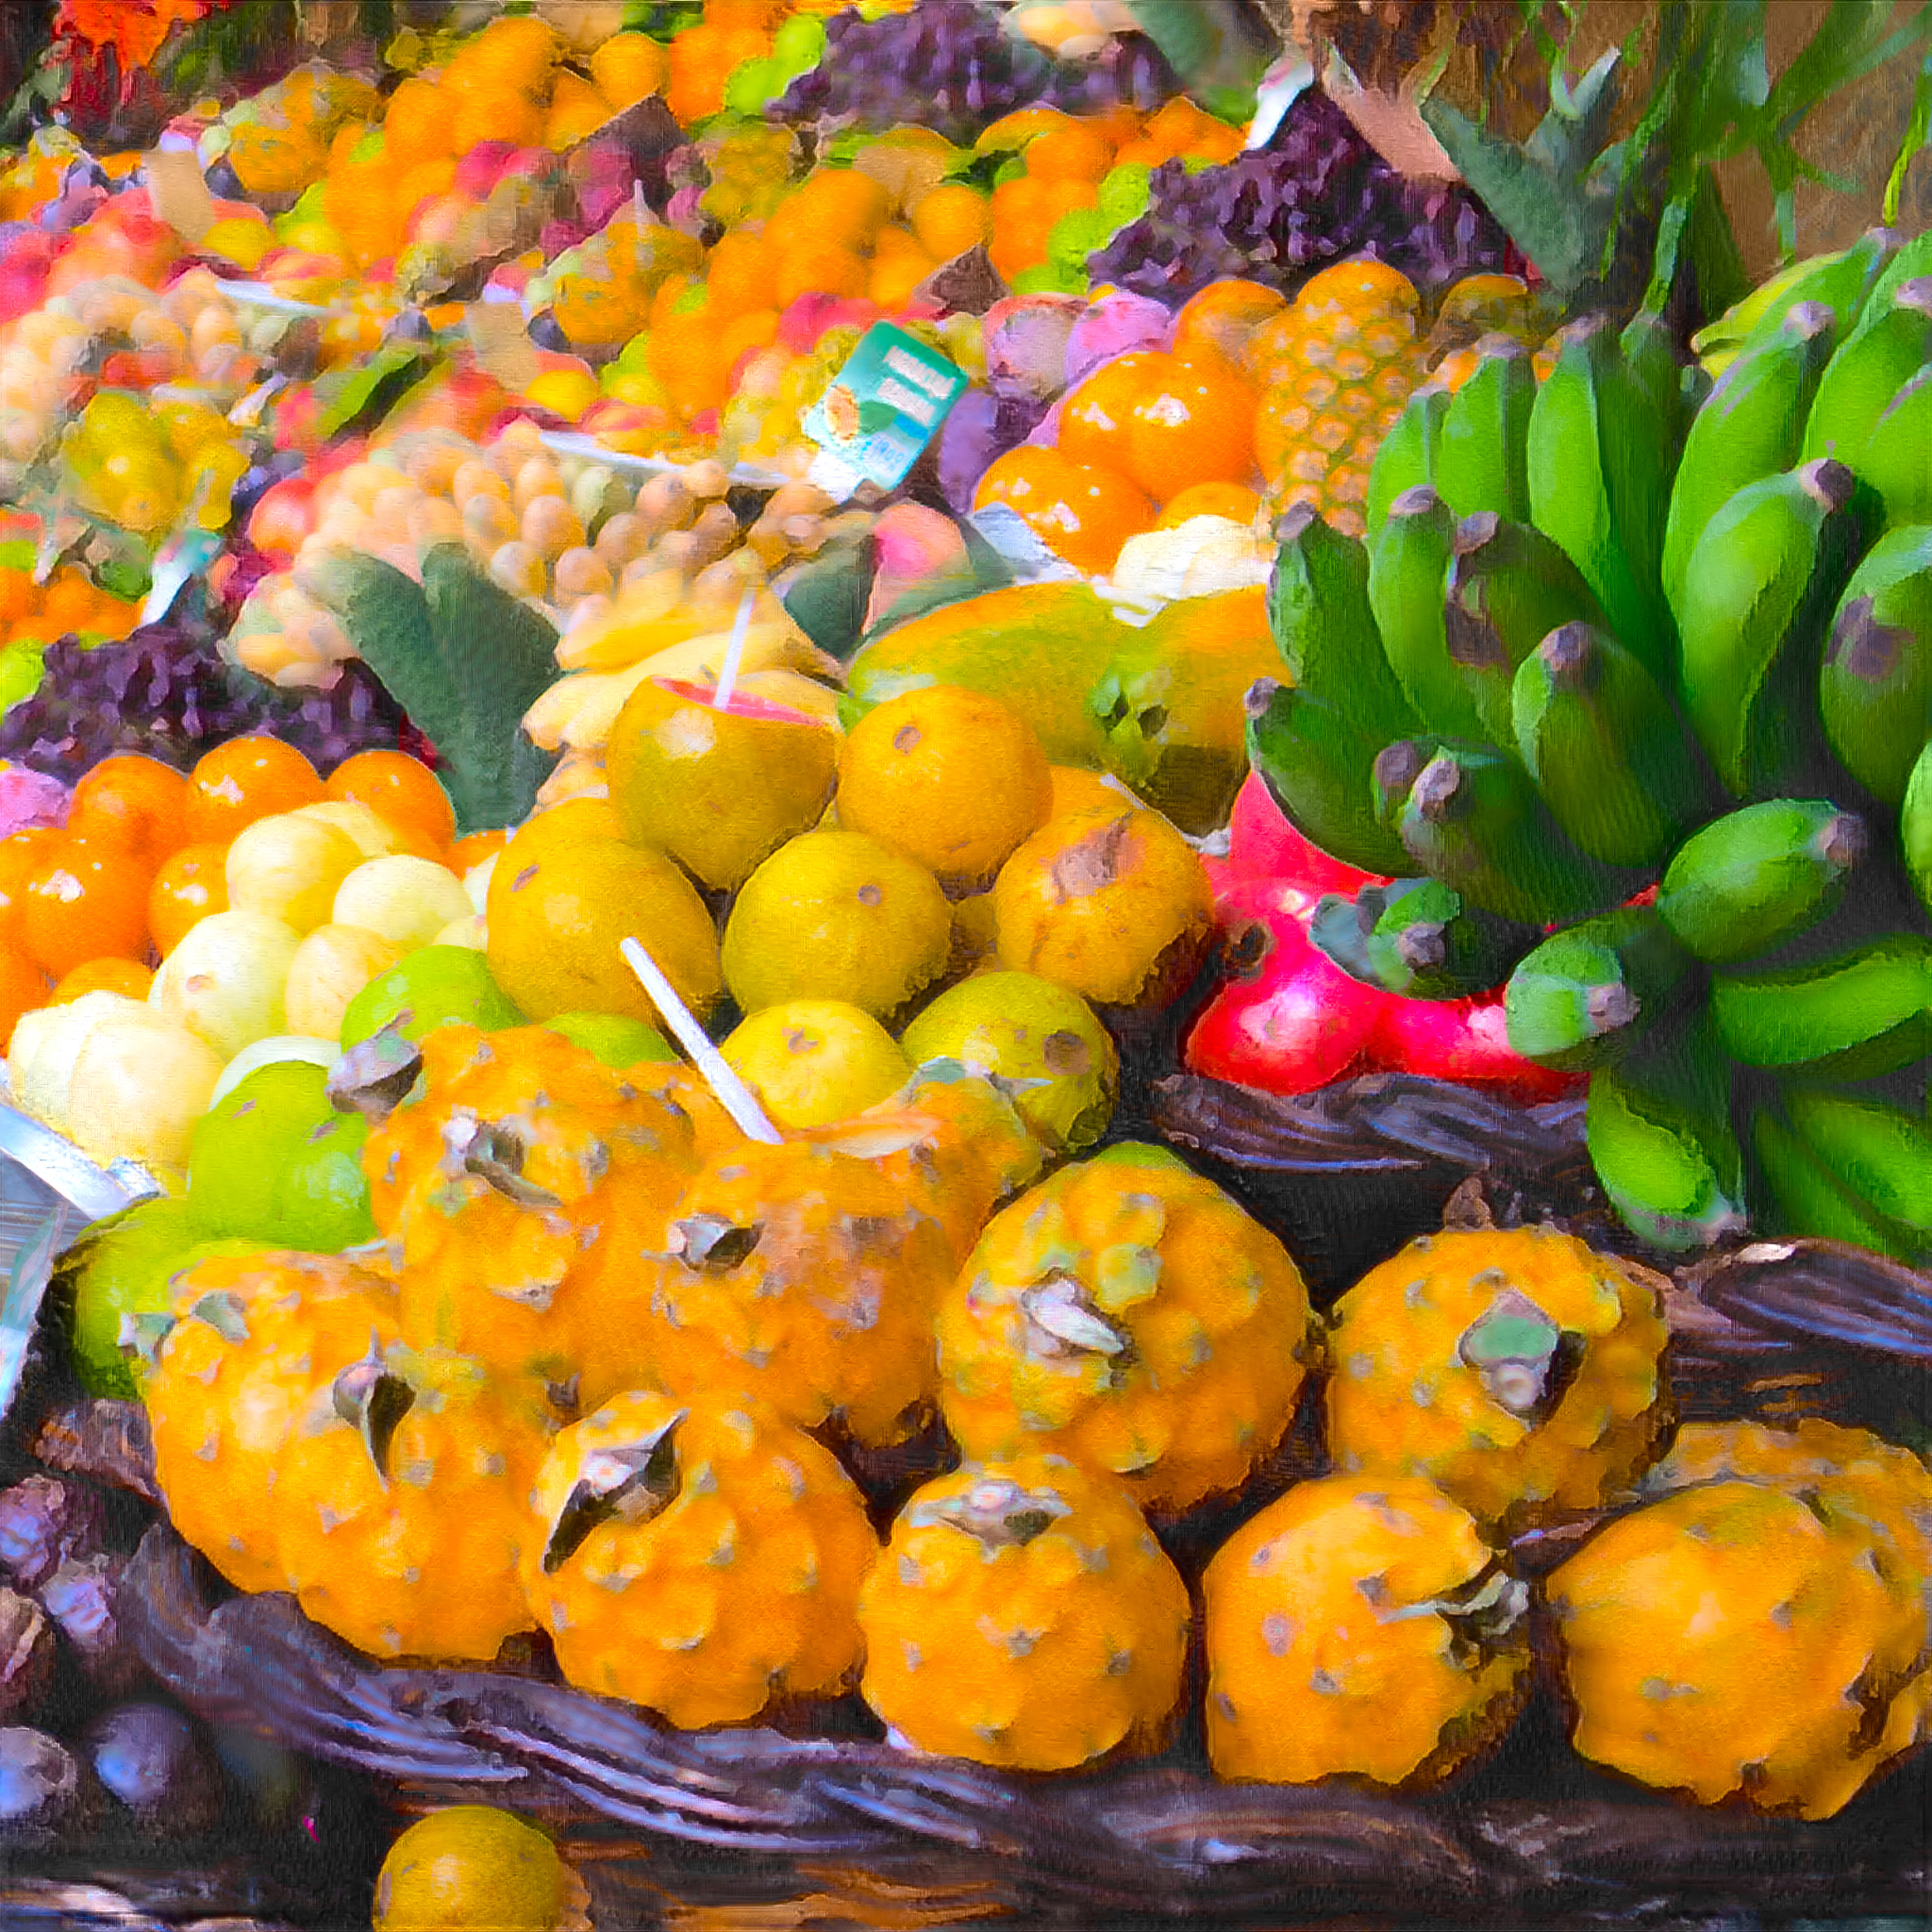 Fruits on Market